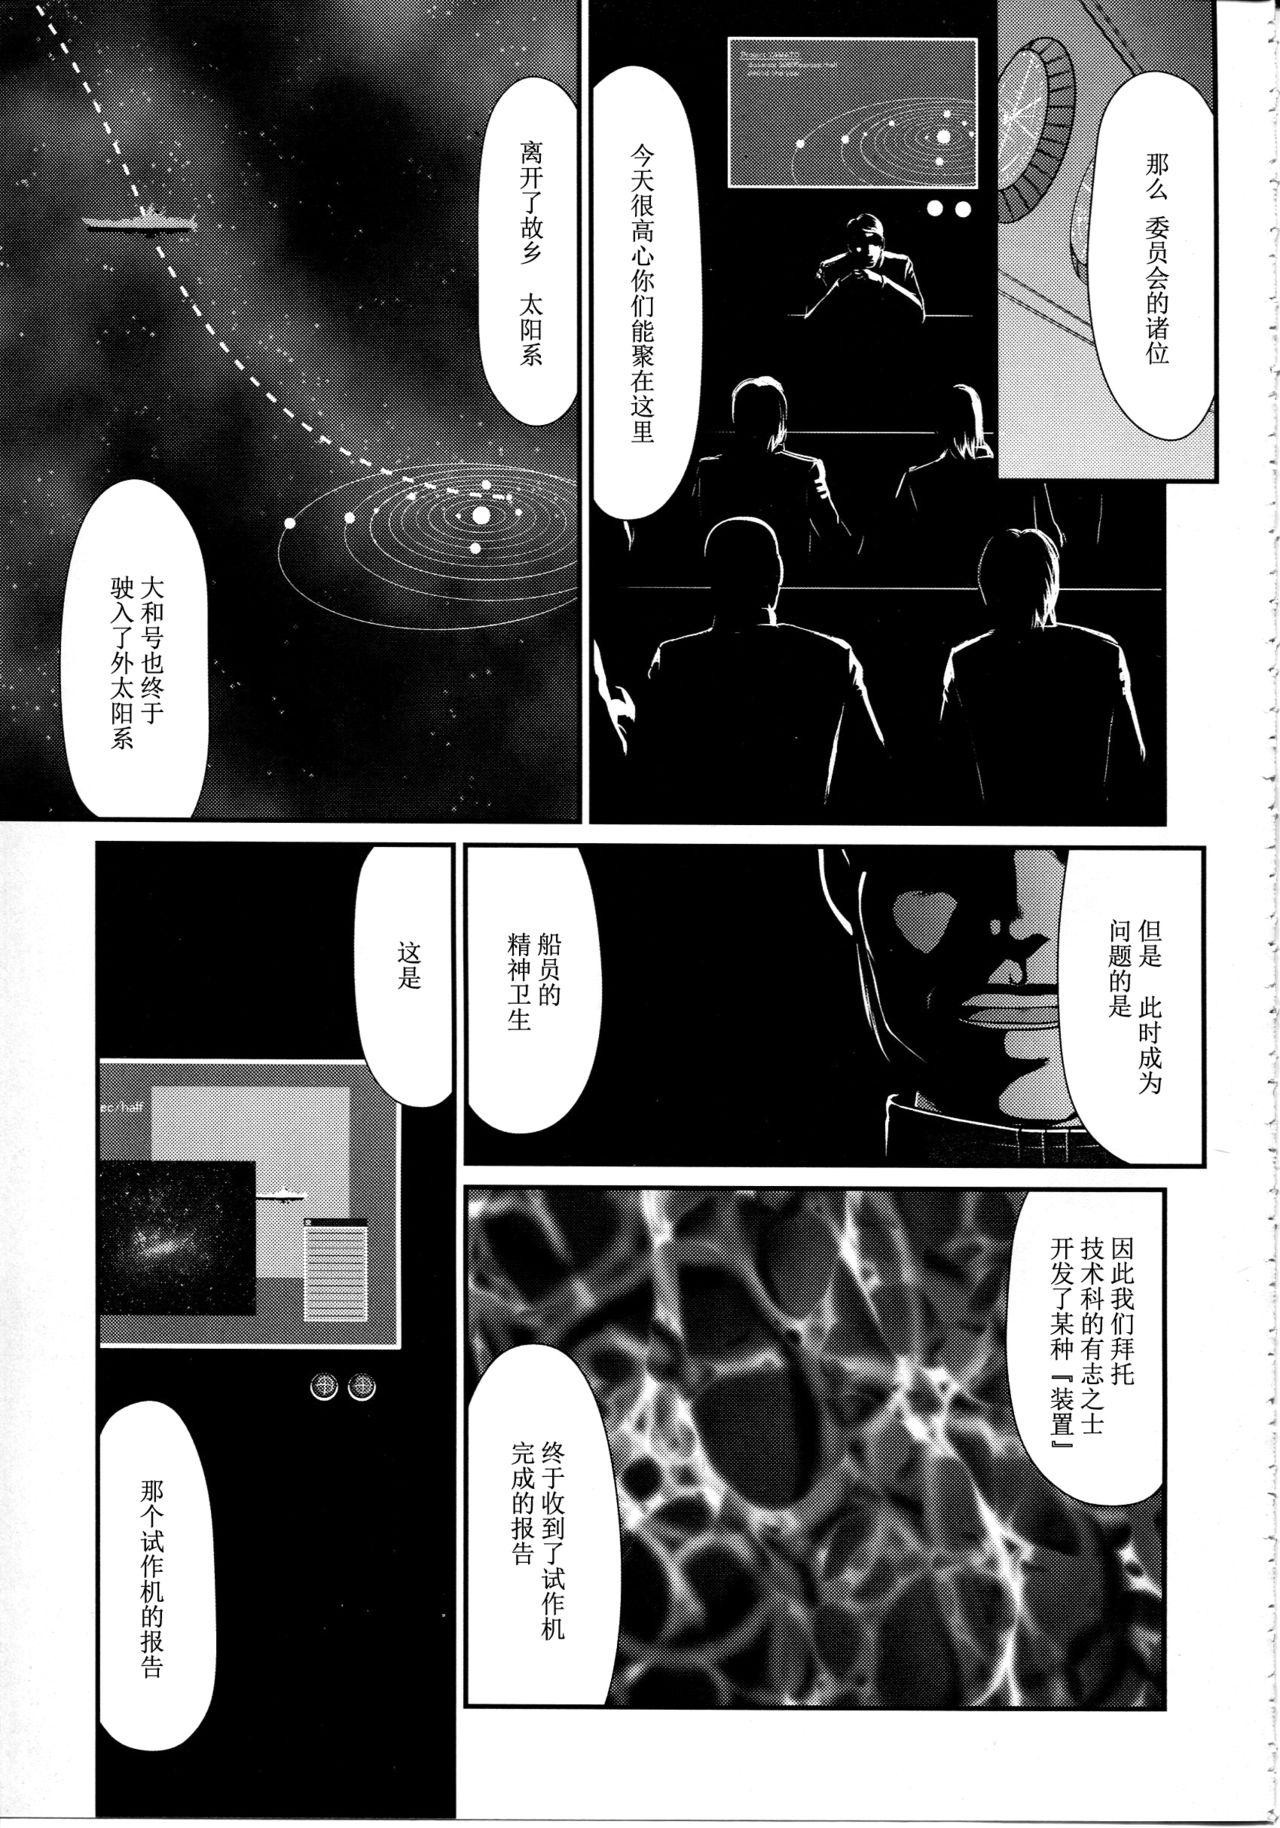 Xxx Yuki no Shizuku - Space battleship yamato 2199 Cumfacial - Page 4